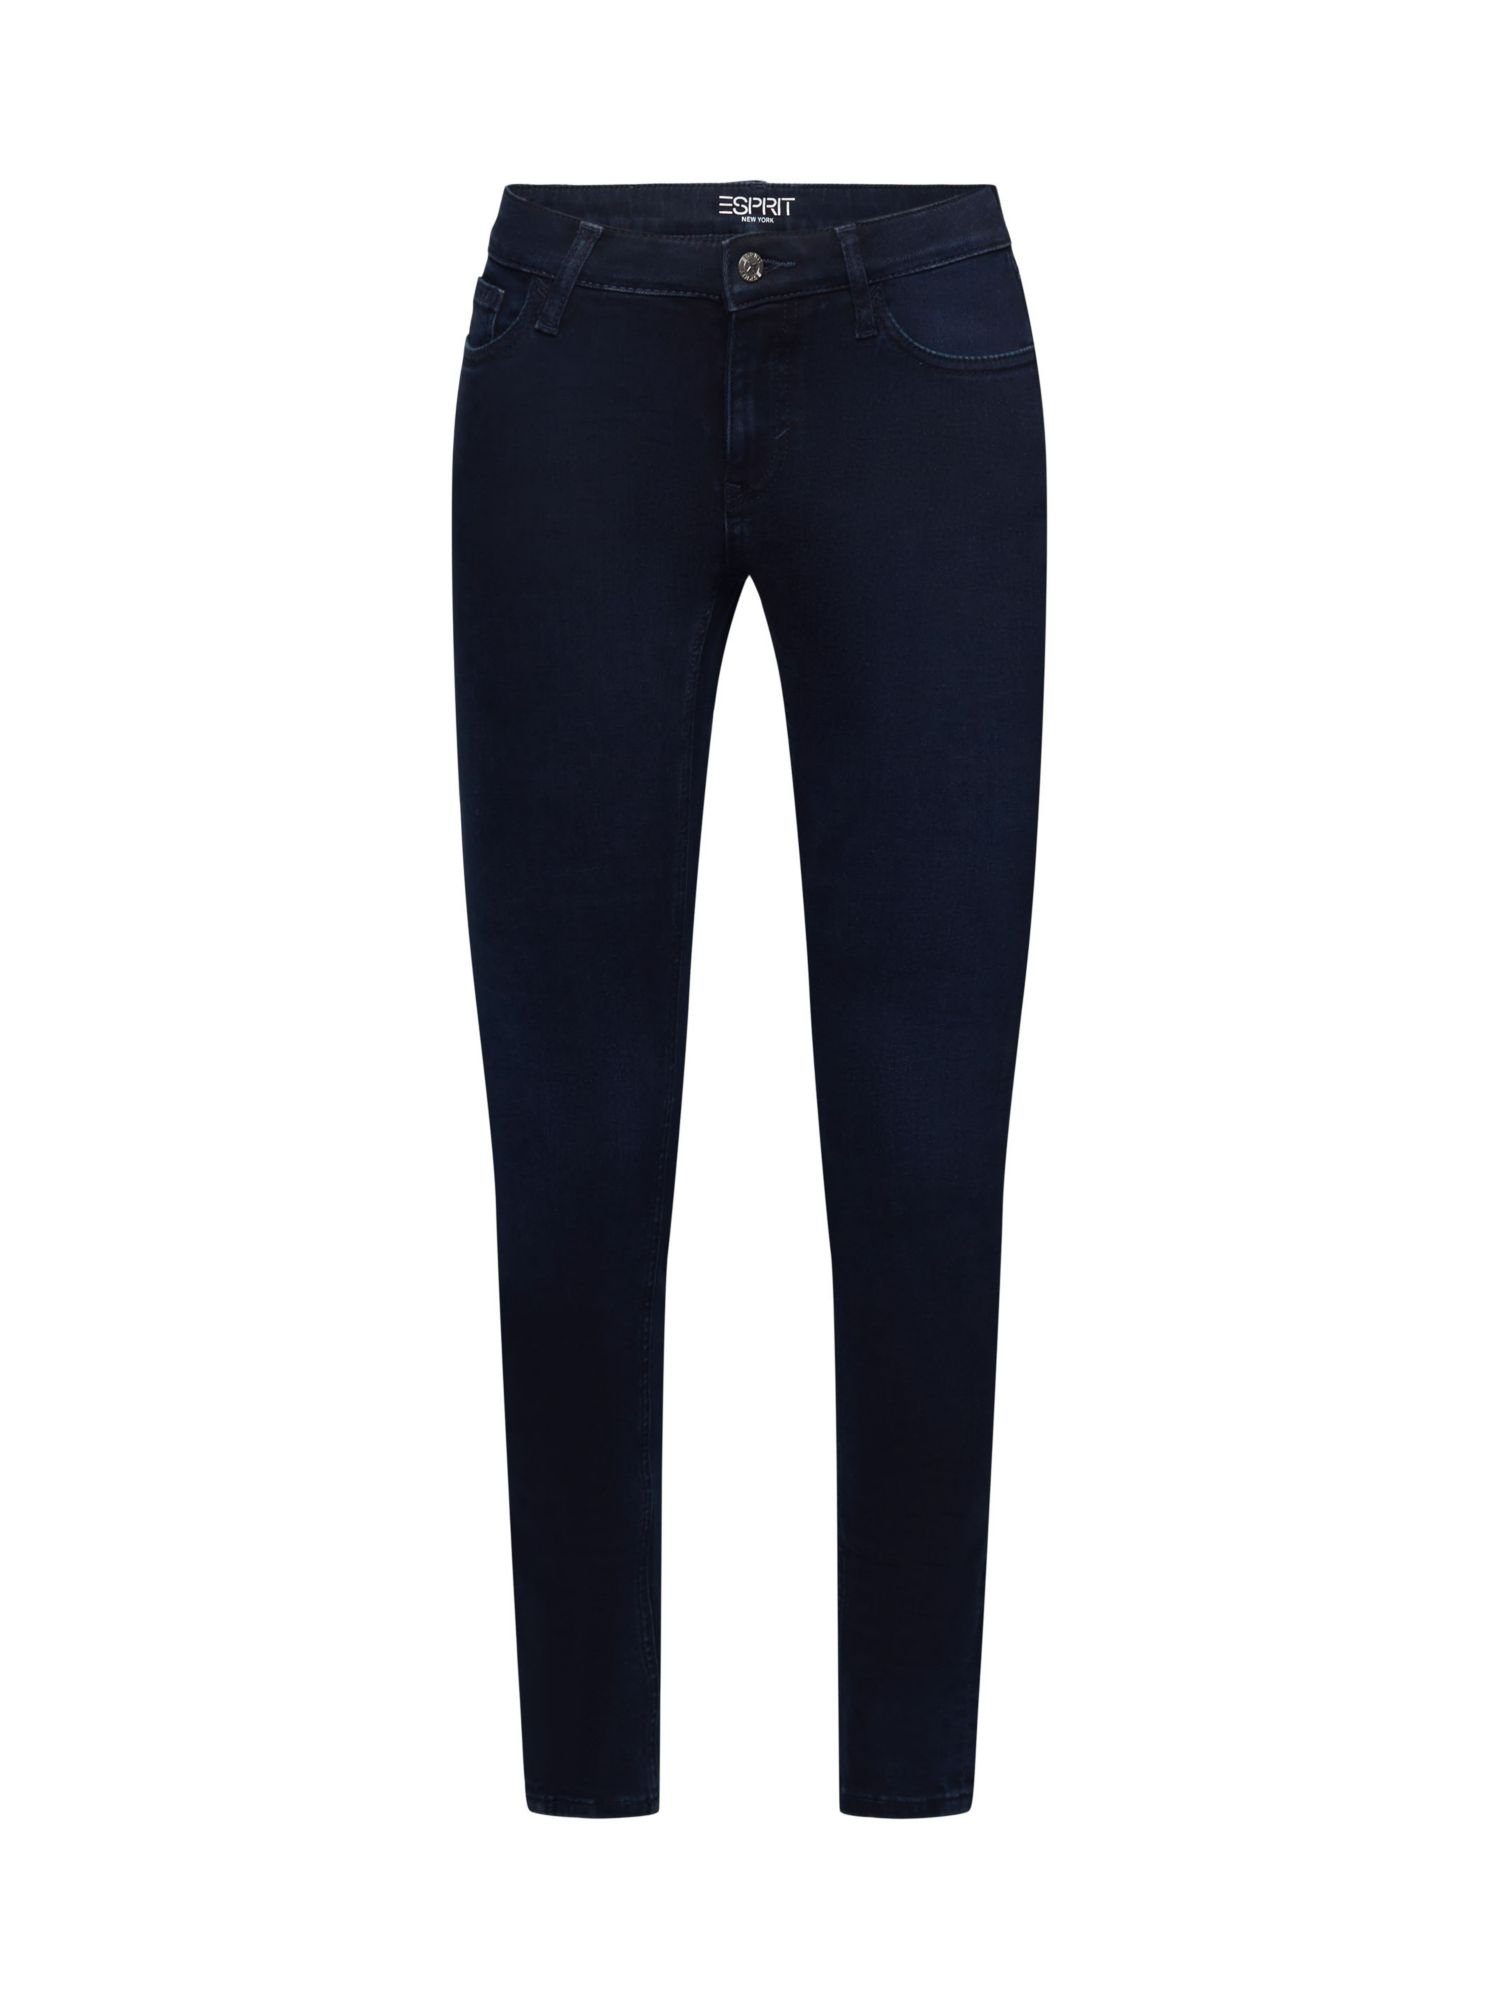 Esprit Skinny-fit-Jeans Schmal geschnittene Jeans mit mittlerer Bundhöhe | Skinny Jeans